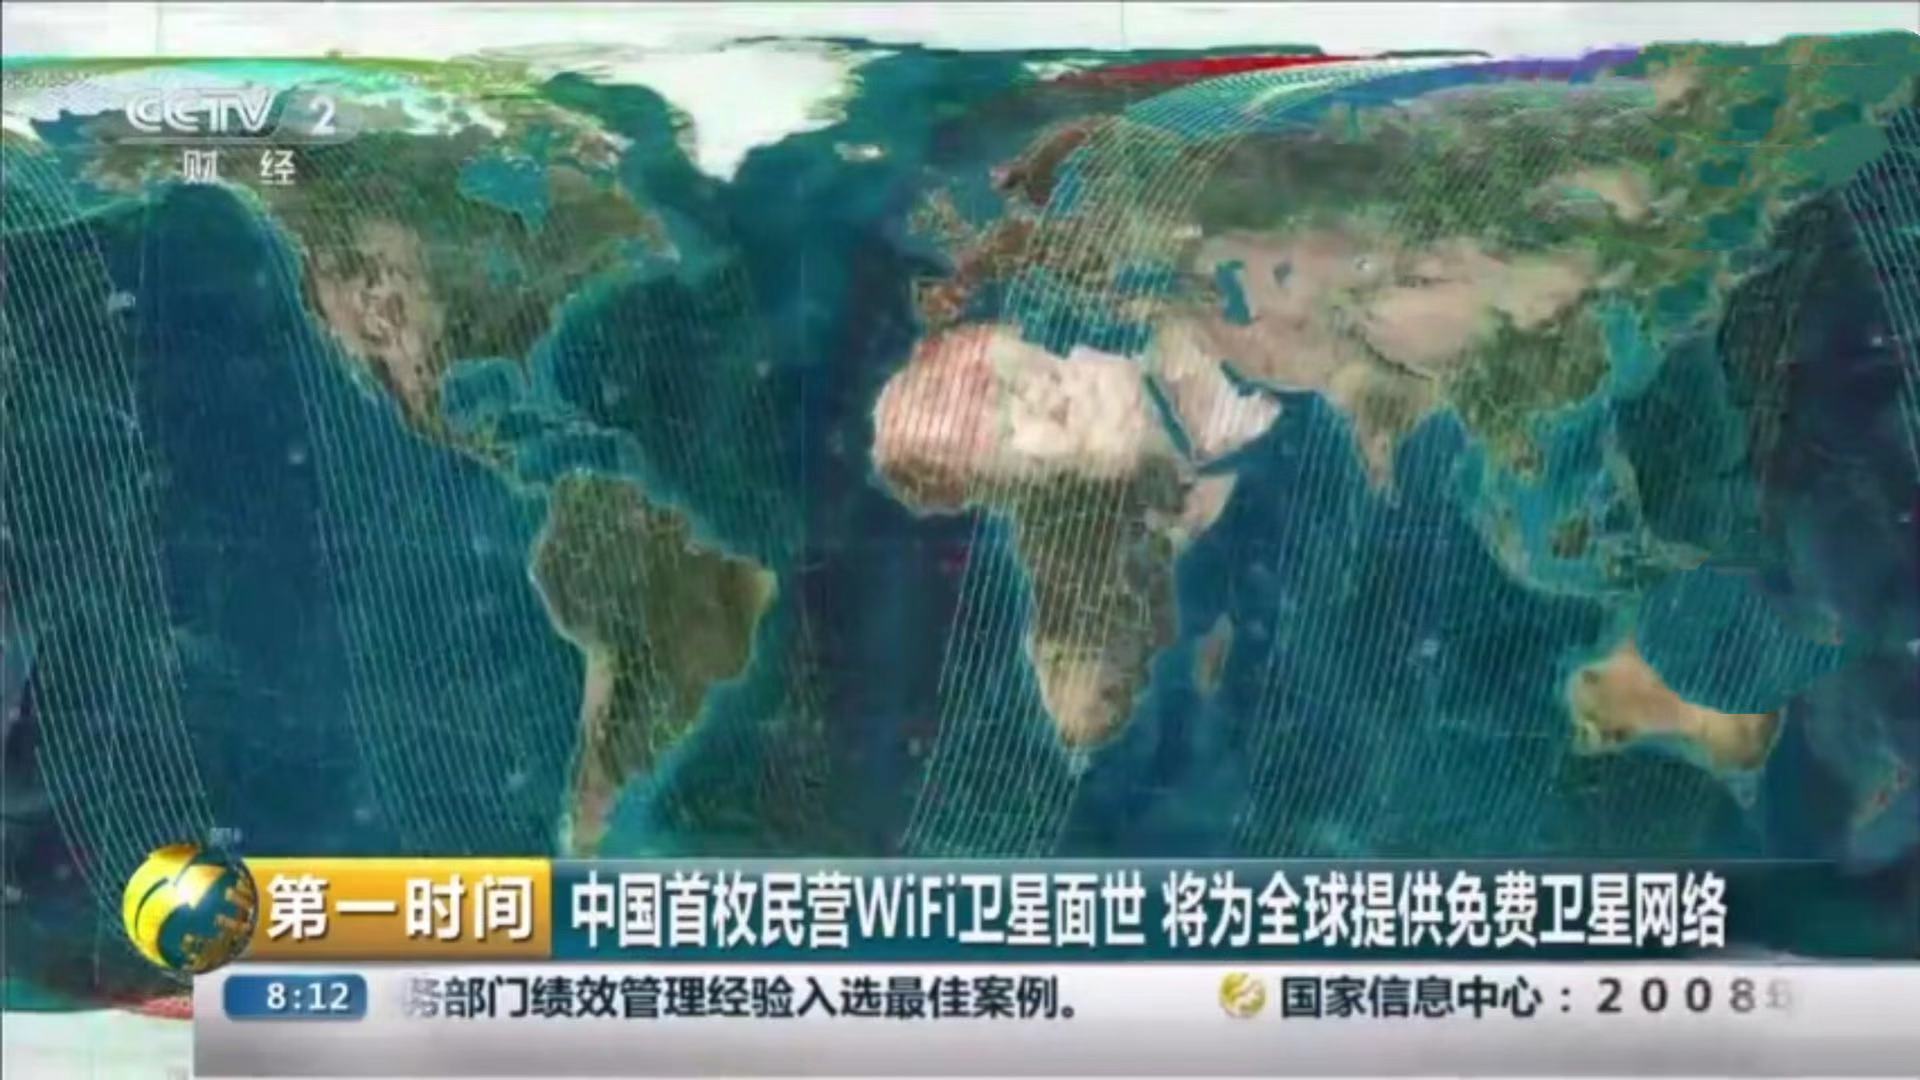 中国首枚民营WiFi卫星将为全球提供免费卫星网络